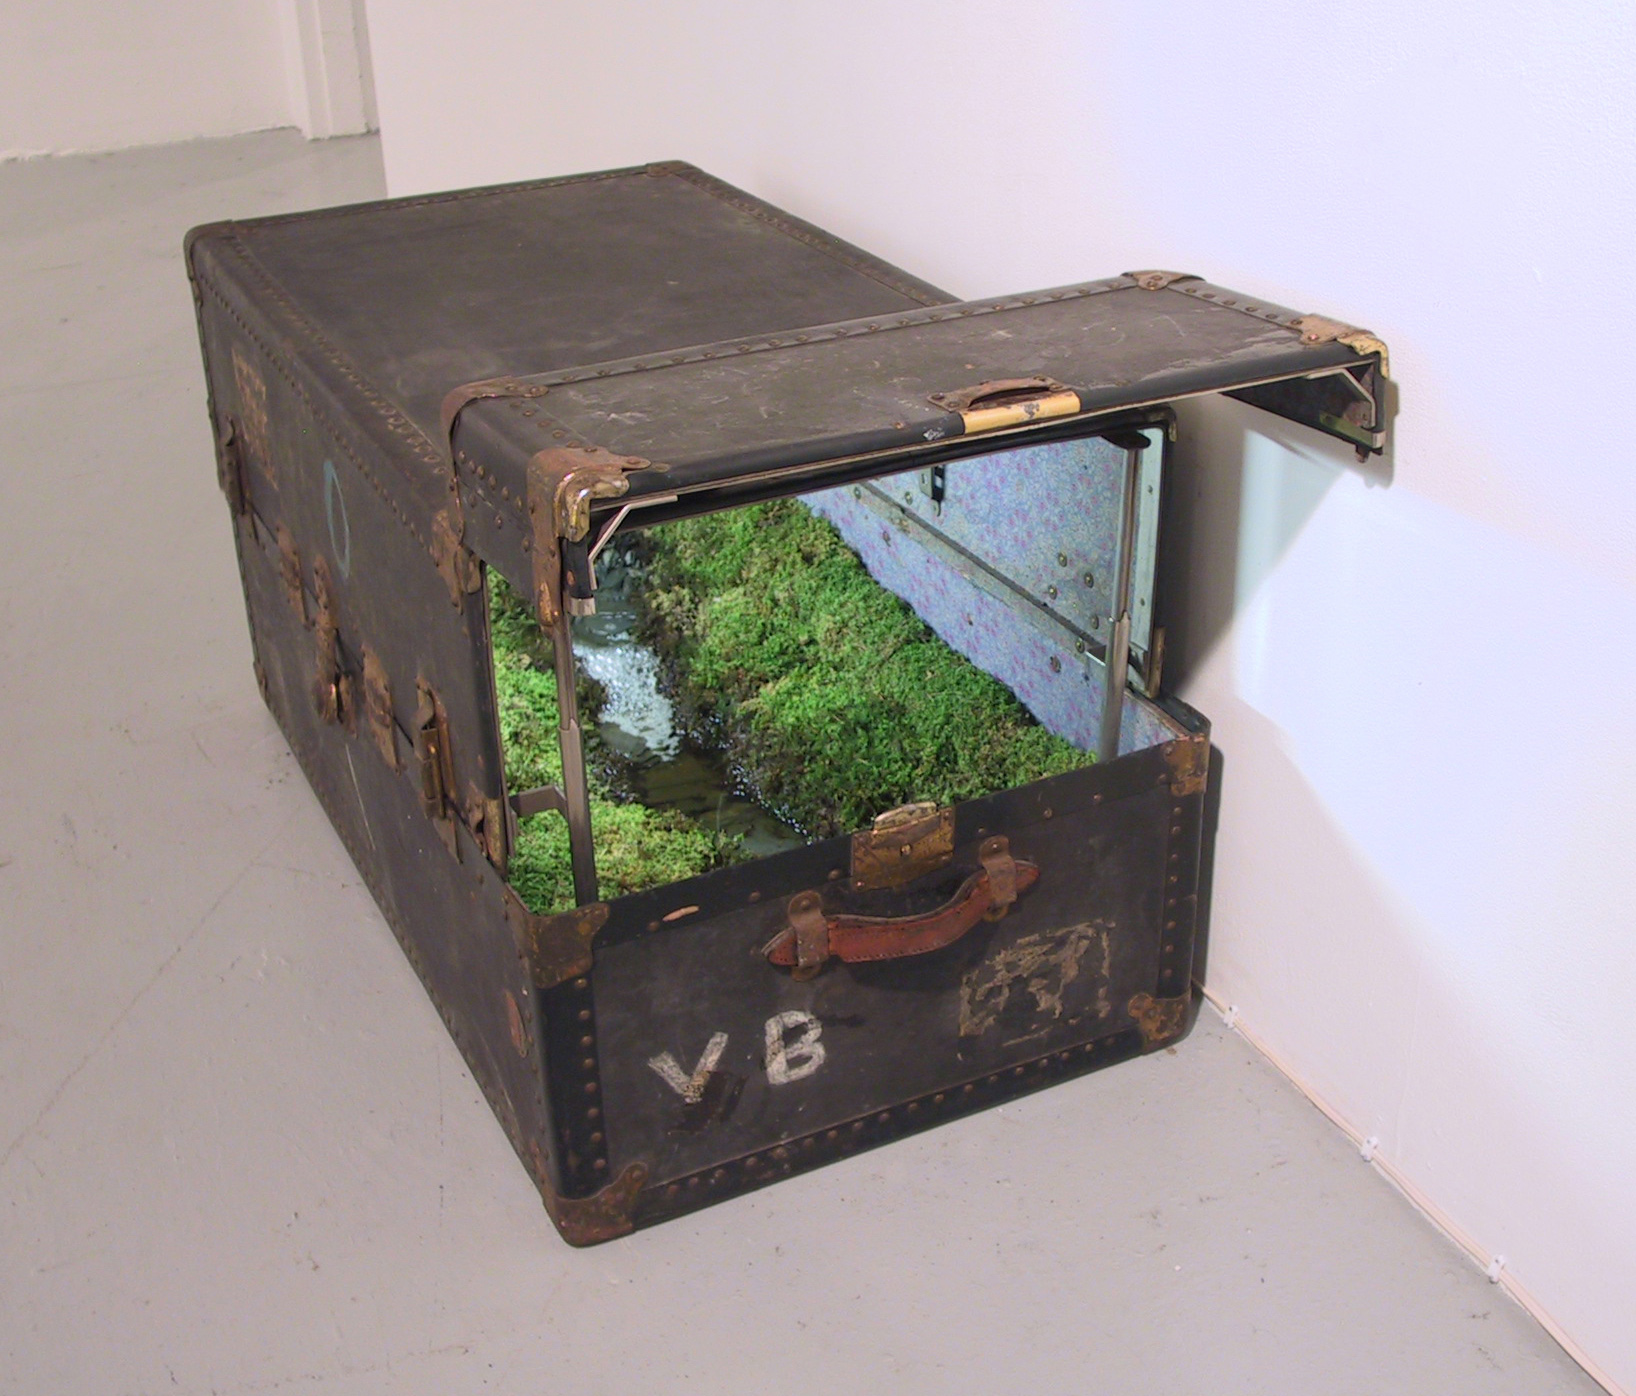 Traveling Landscapes, ecosistemi in miniatura all'interno di valigie vintage | Collater.al